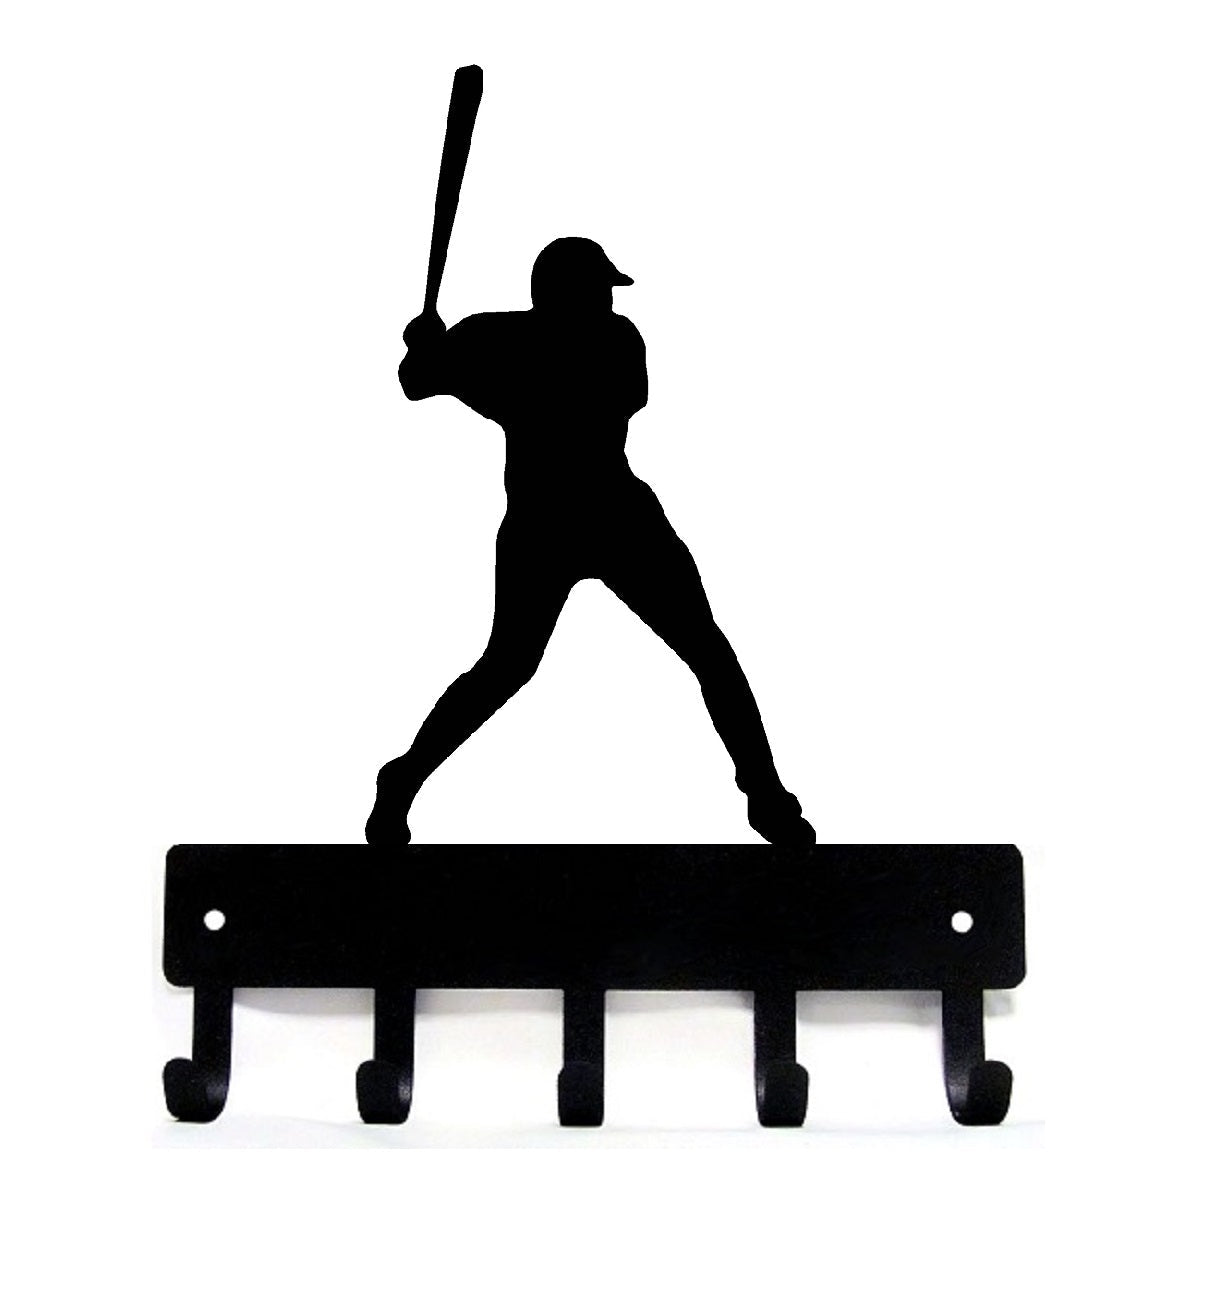 Baseball Batter Key Holder - The Metal Peddler Key Rack baseball, key rack, Medal Hanger, medal rack, sport